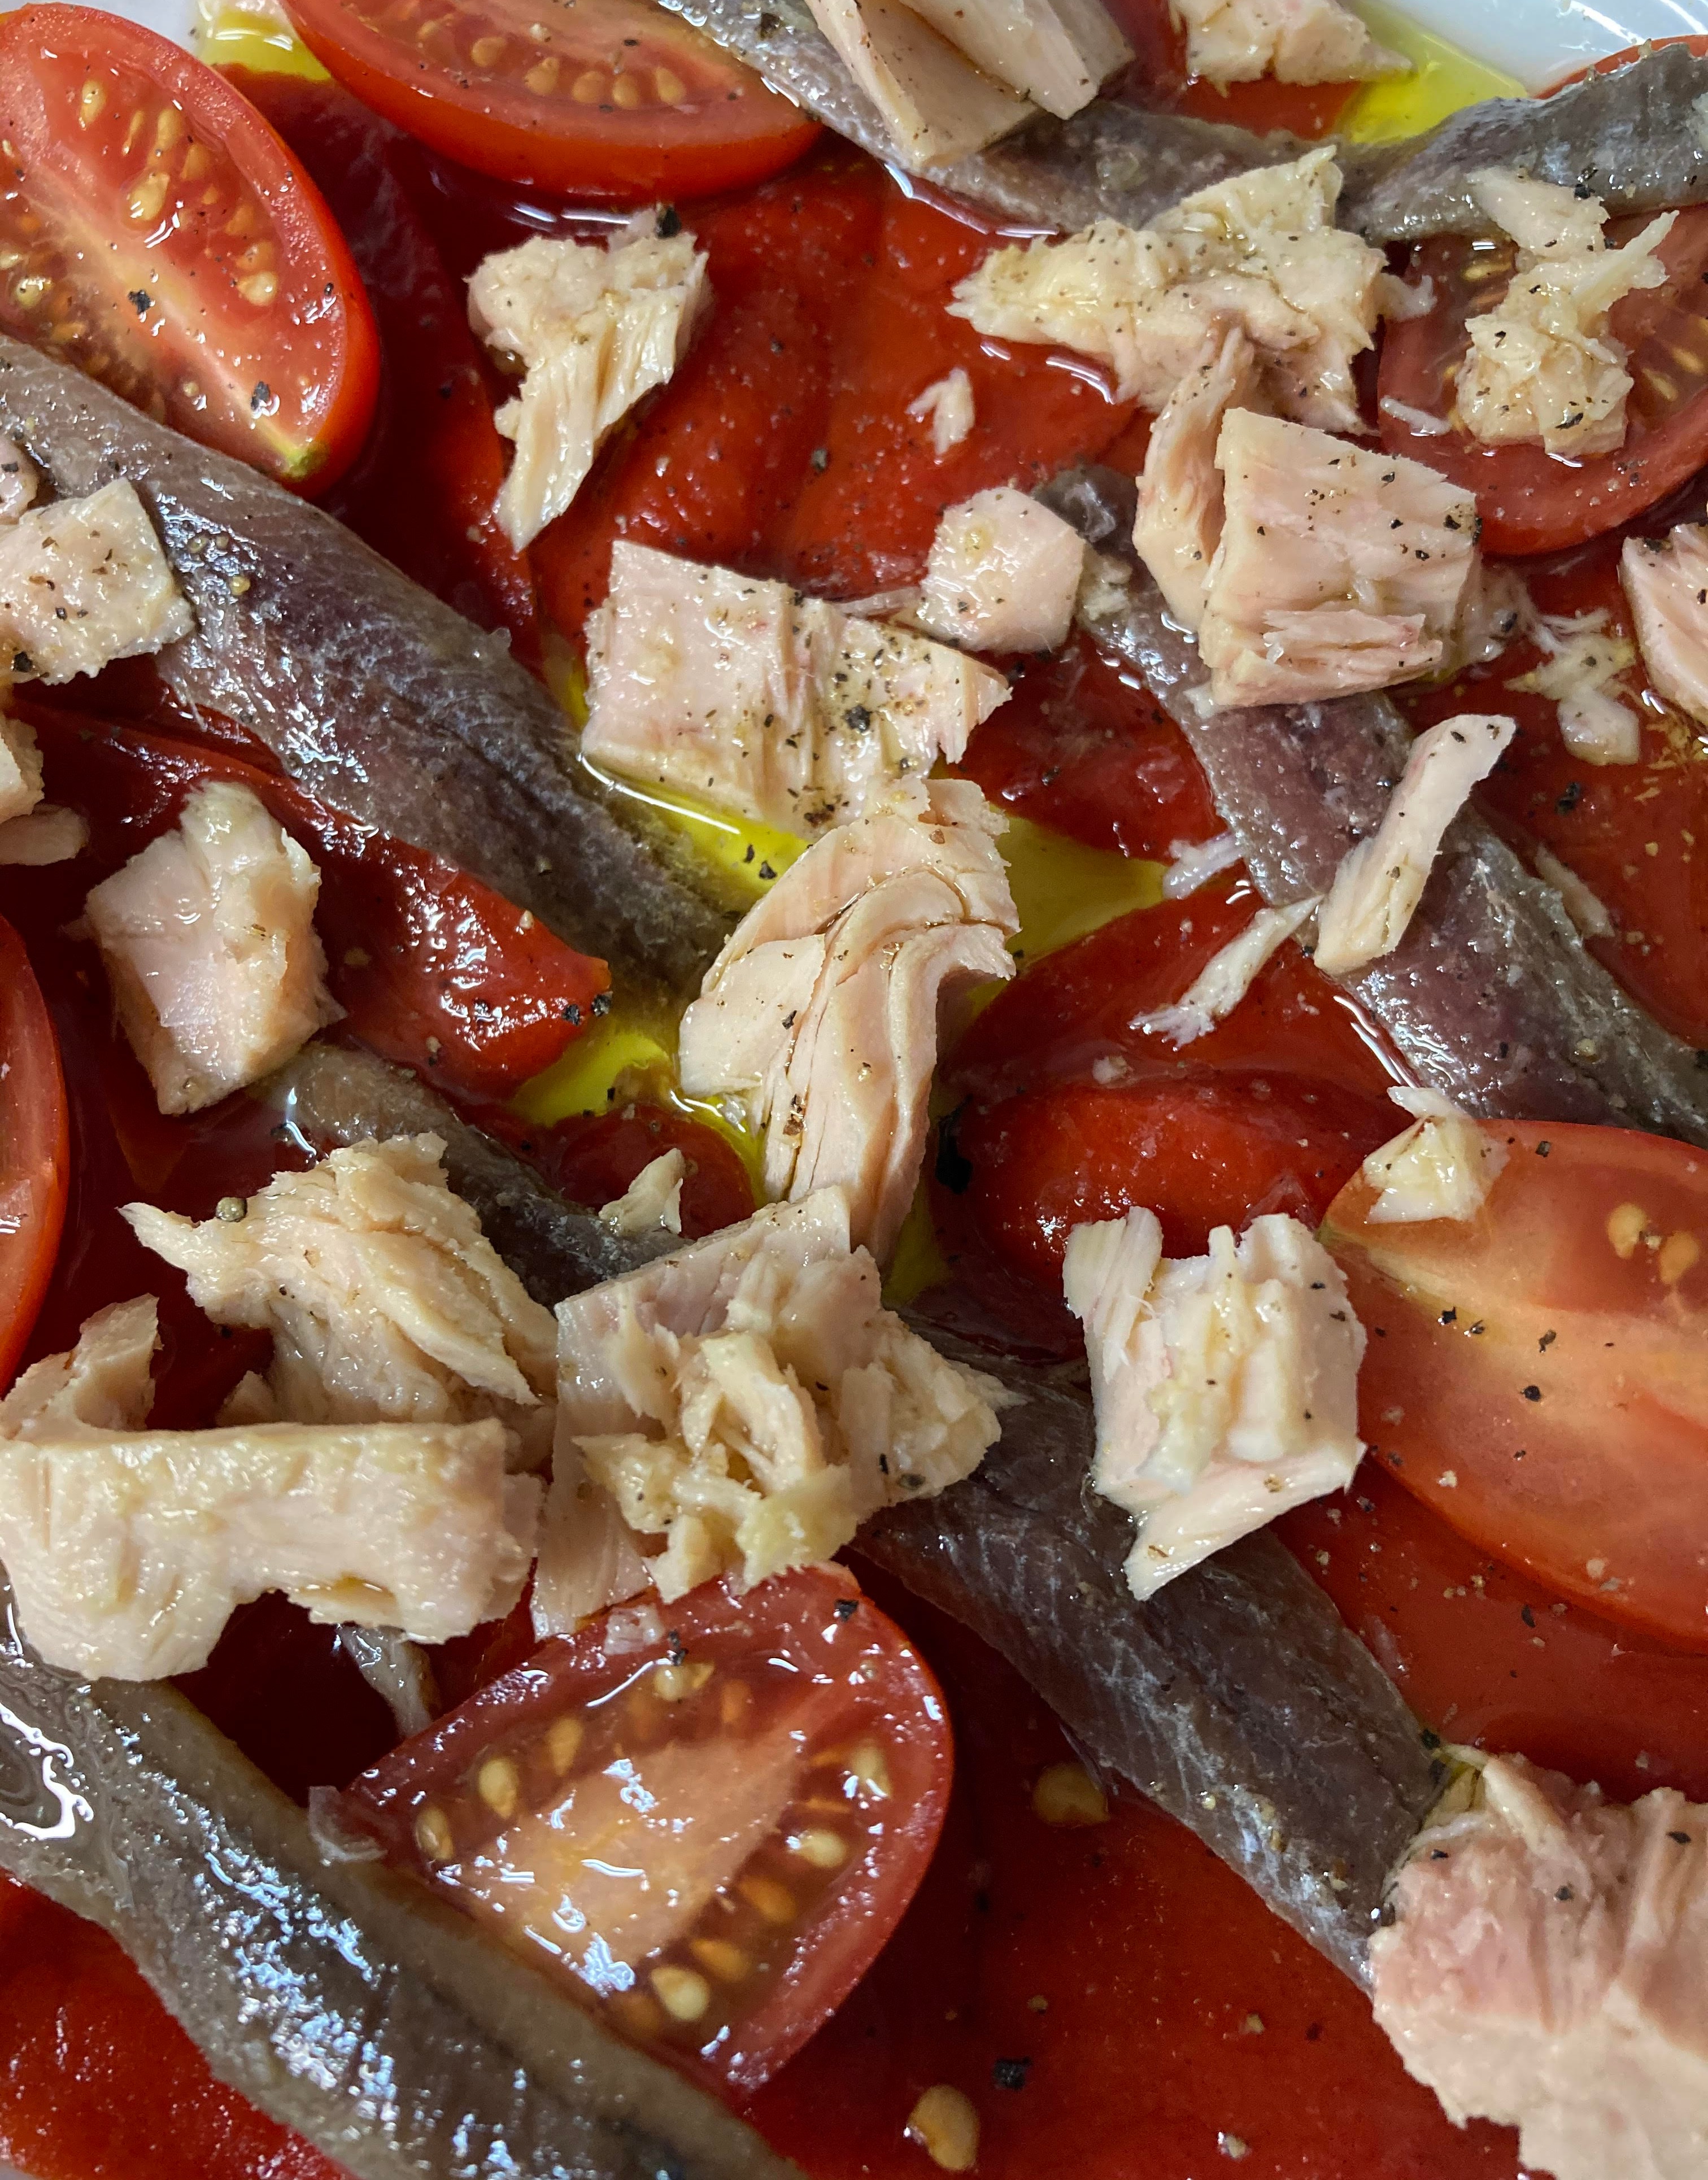 Tuna & red pepper salad